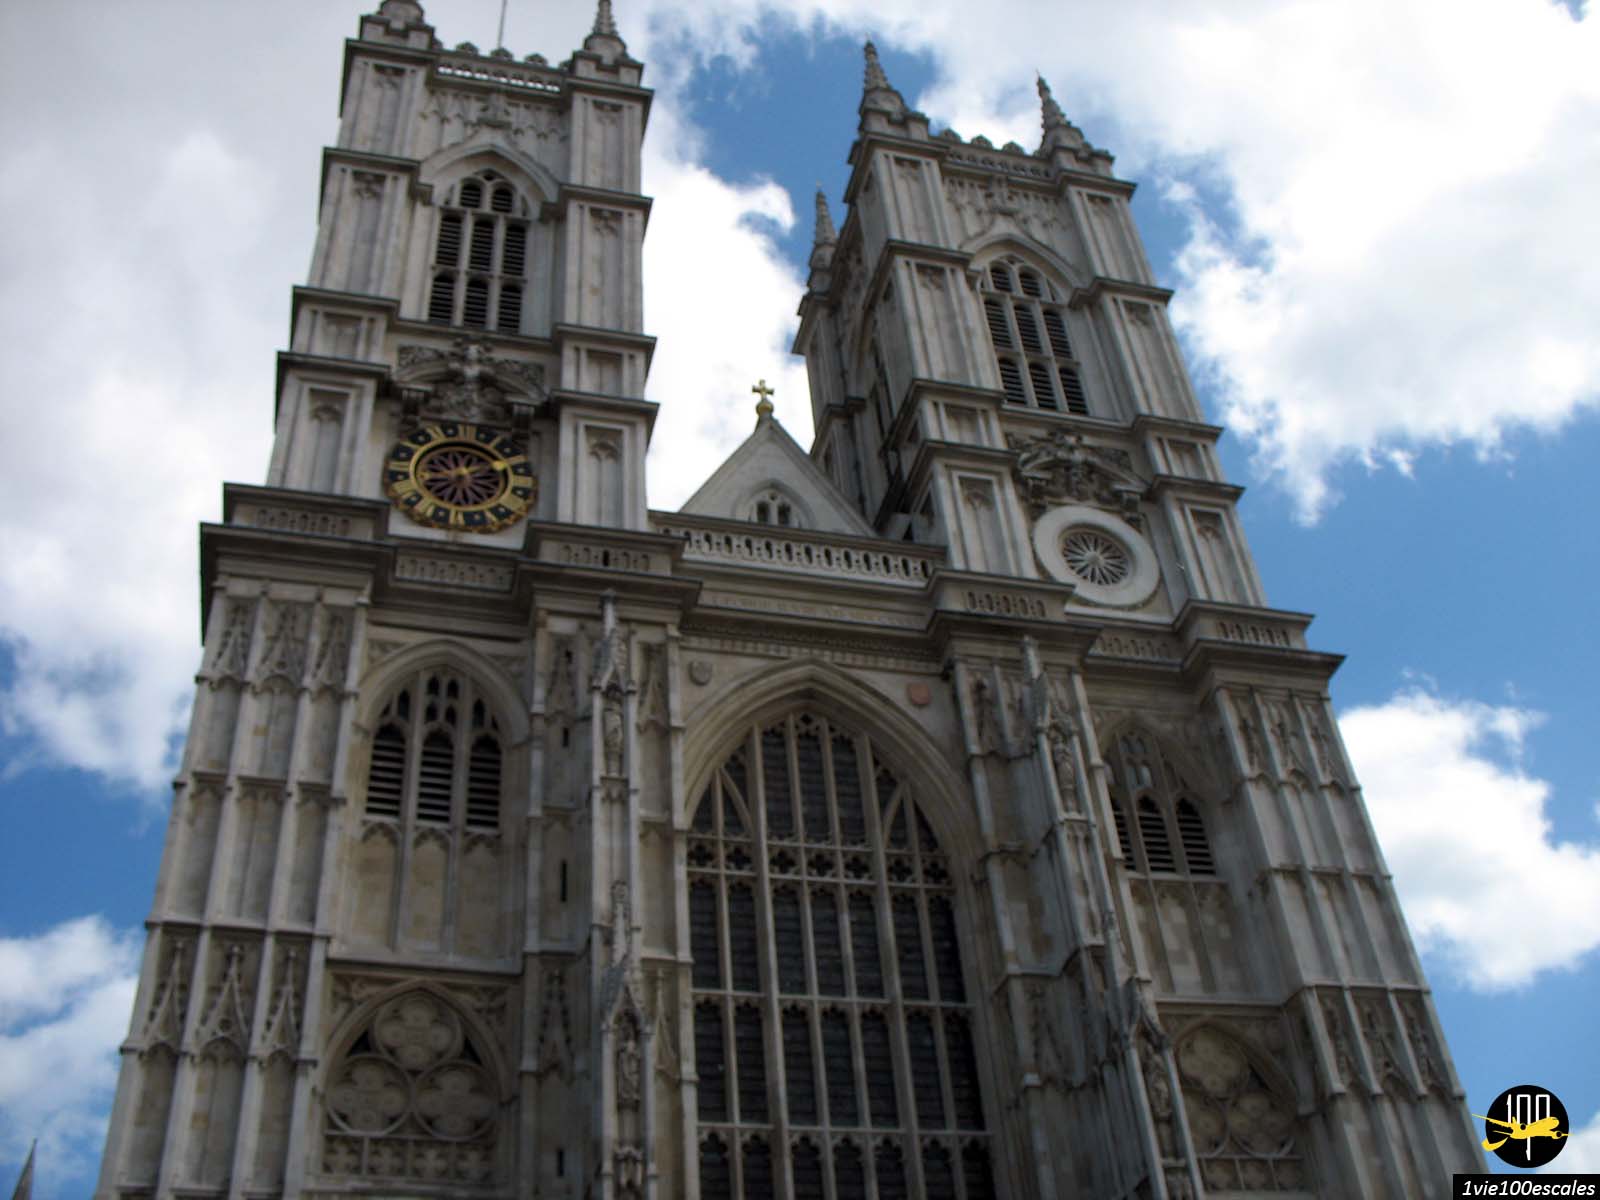 L'abbaye de Westminster est une église mythique en plein centre de Londres. Elle a connu le couronnement des souverains britanniques